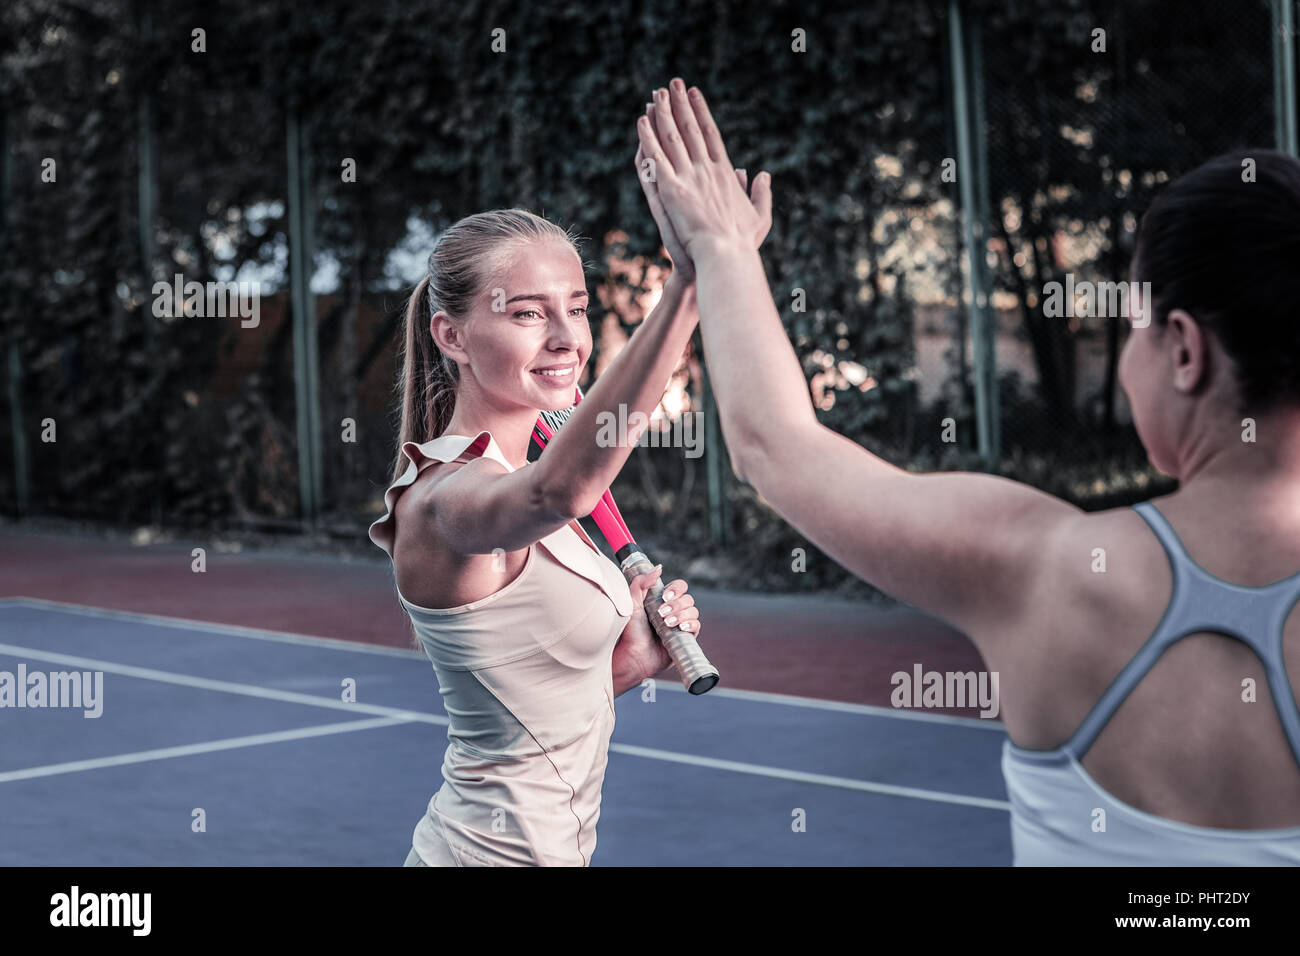 Deux femmes énergiques contestant en match de tennis Banque D'Images